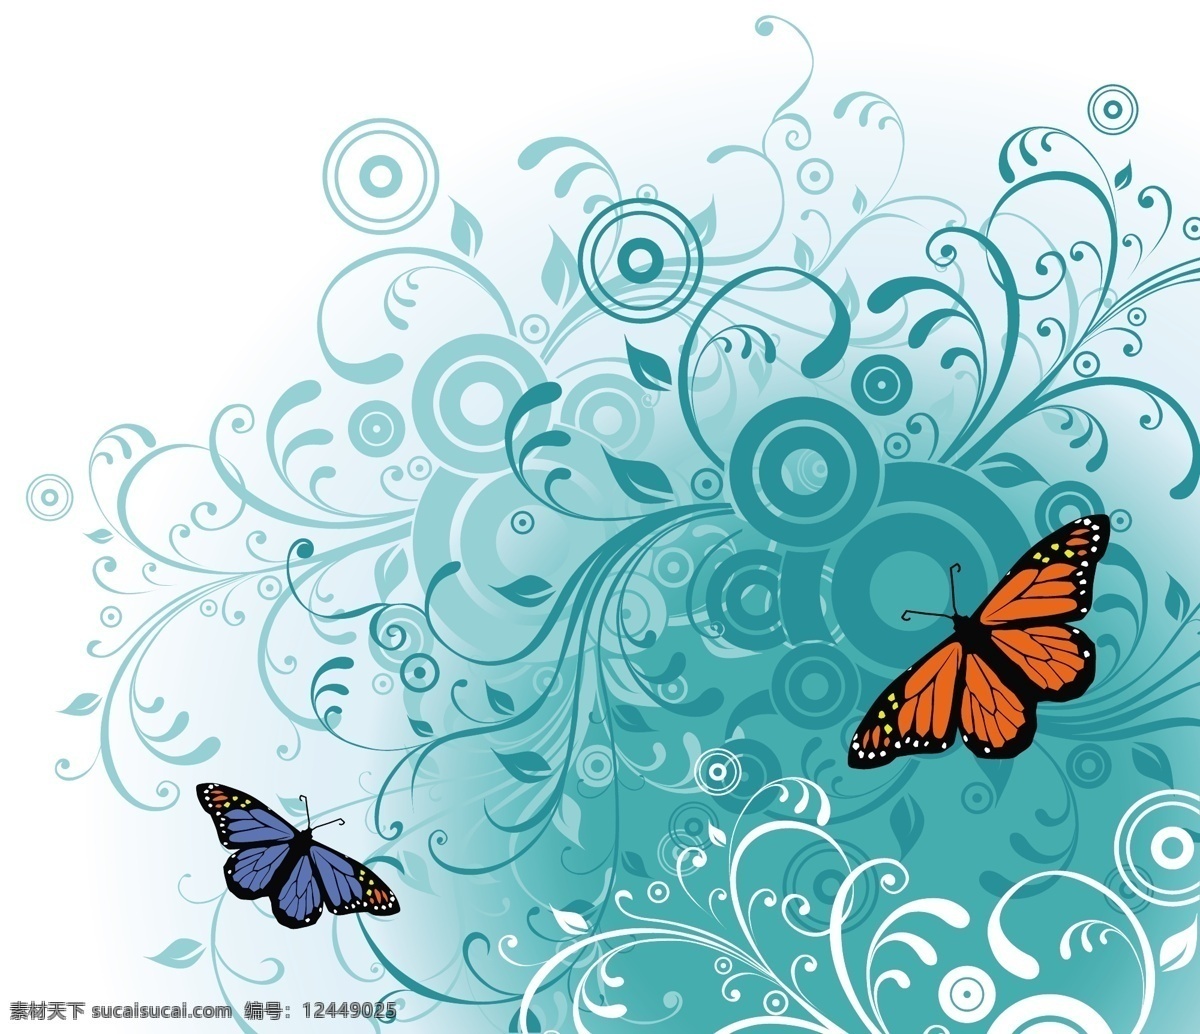 自由 蝴蝶 矢量 艺术 蝴蝶飞矢 免费 图像 无 插画 蝴蝶的轮廓 矢量图 其他矢量图